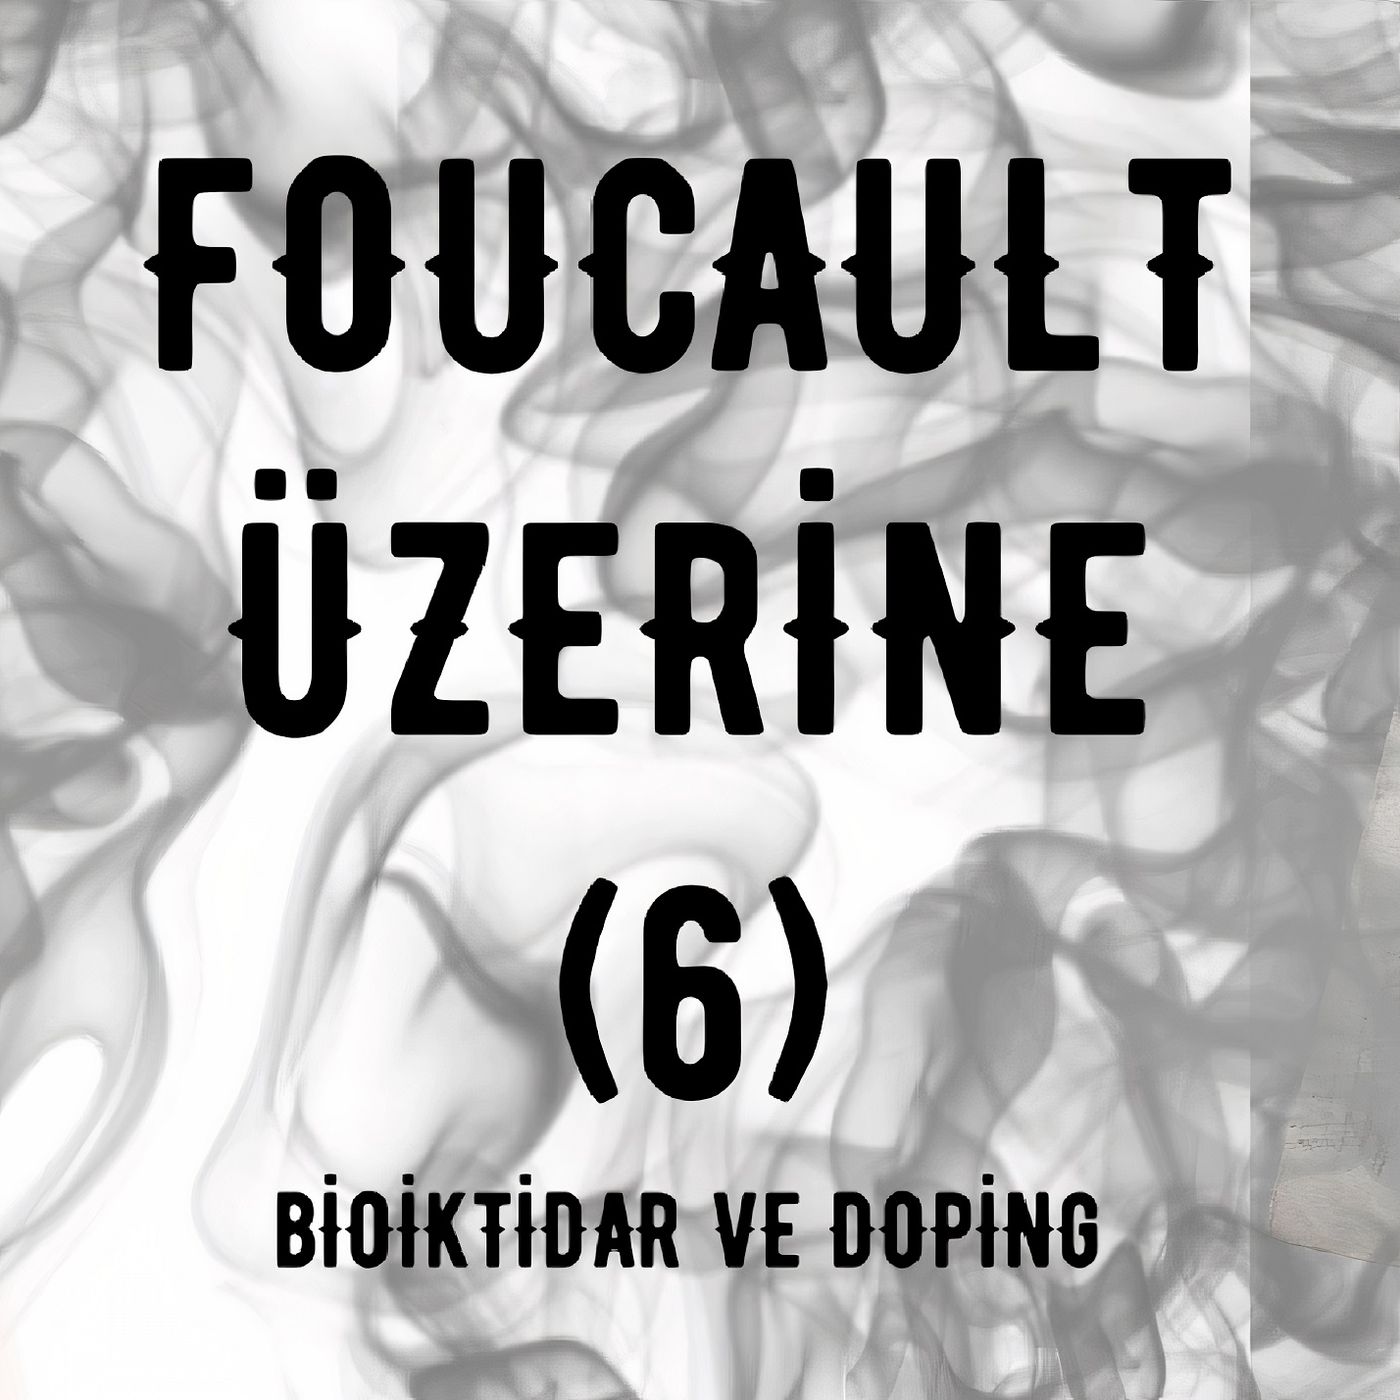 Michel Foucault Üzerine (6): Bioiktidar ve Doping (Kapanış)